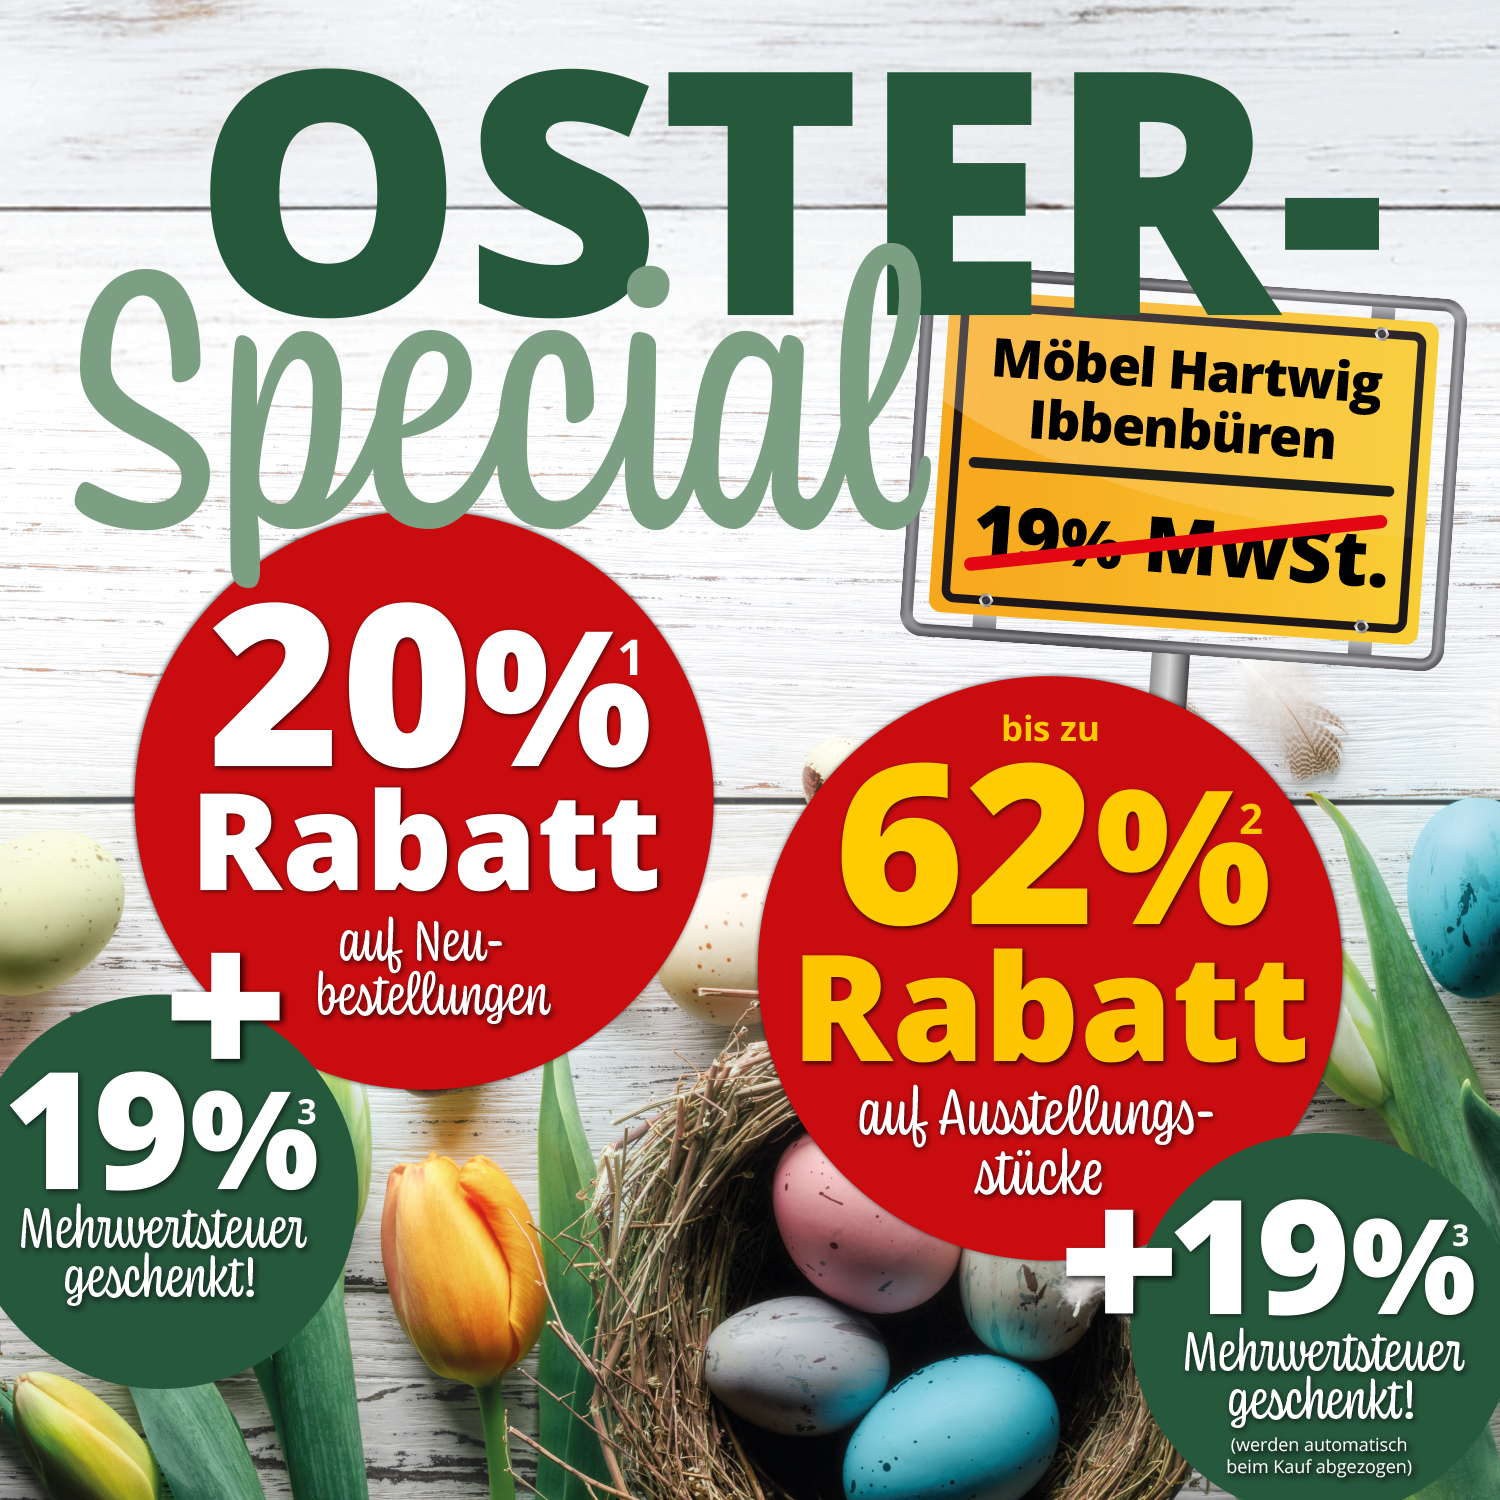 Großes Oster-Special bei Möbel Hartwig in Ibbenbüren: 20% Rabatt auf Neubestellungen + 19% Mehrwertsteuer geschenkt und bis zu 62% Rabatt auf Ausstellungsstücke + 19% Rabatt Mehrwertsteuer geschenkt!